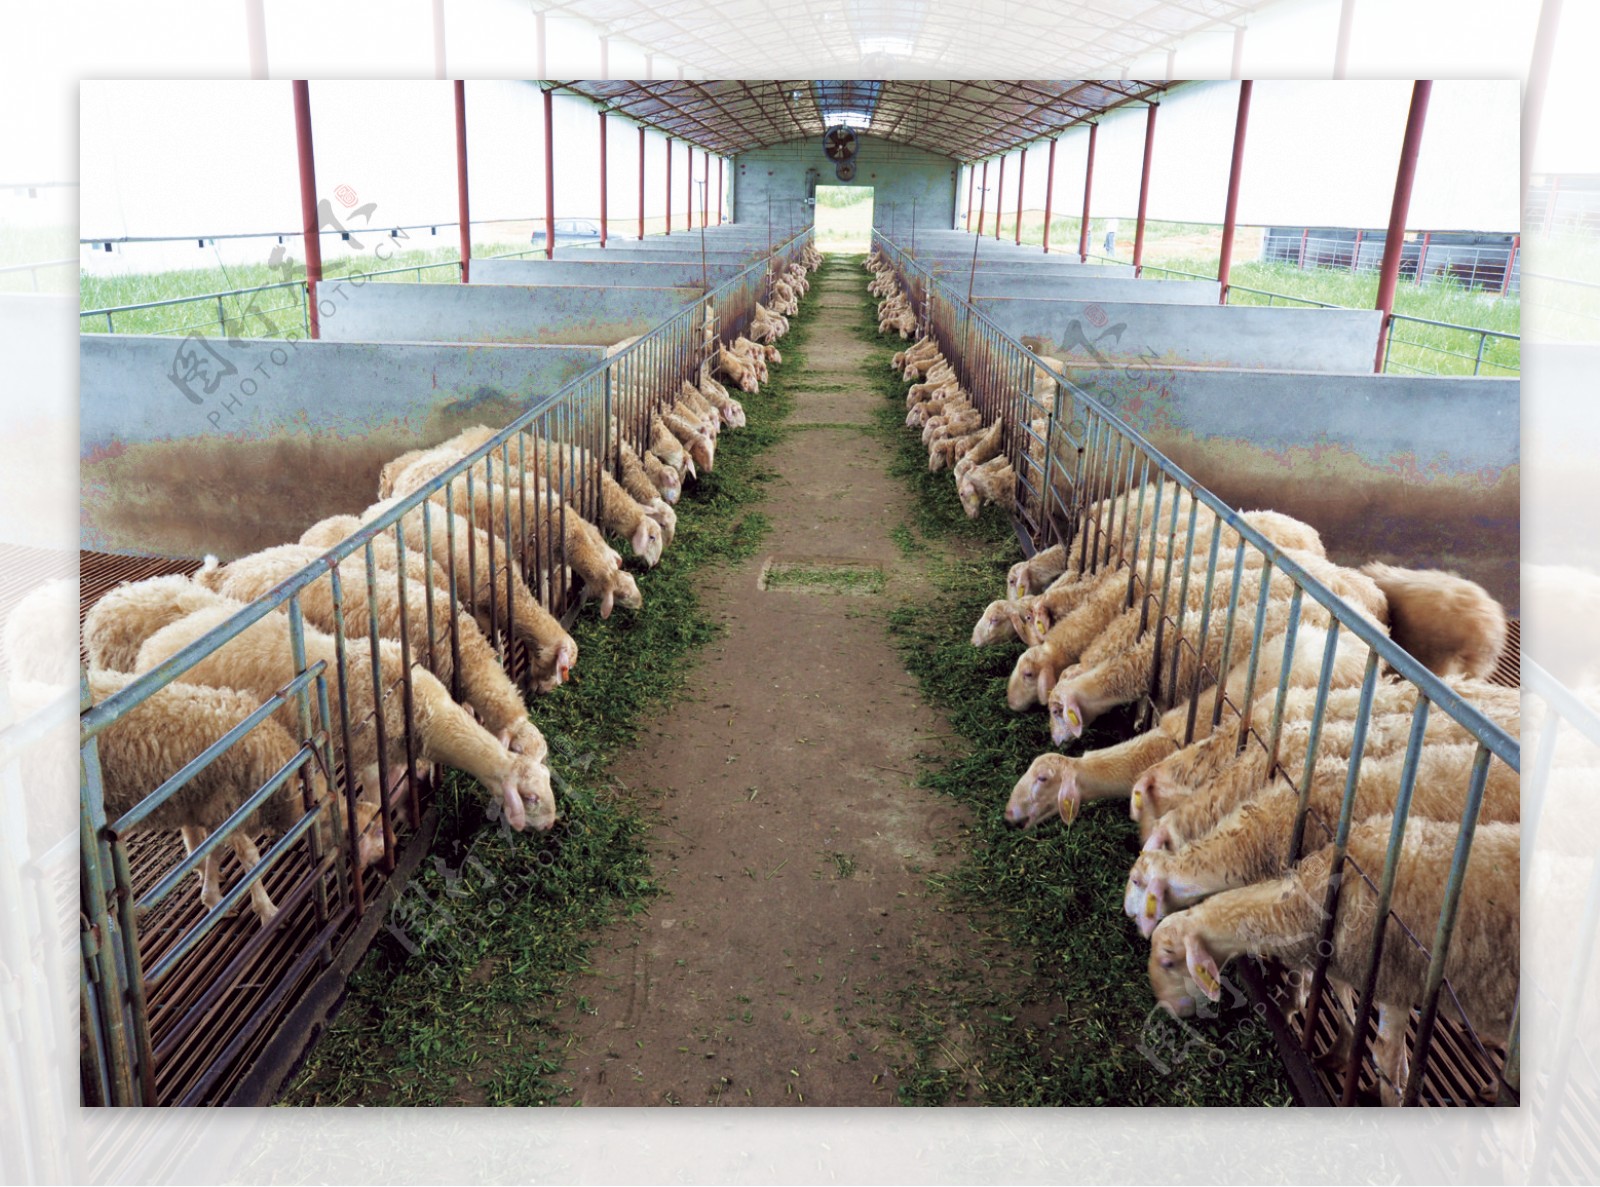 肉羊养殖场